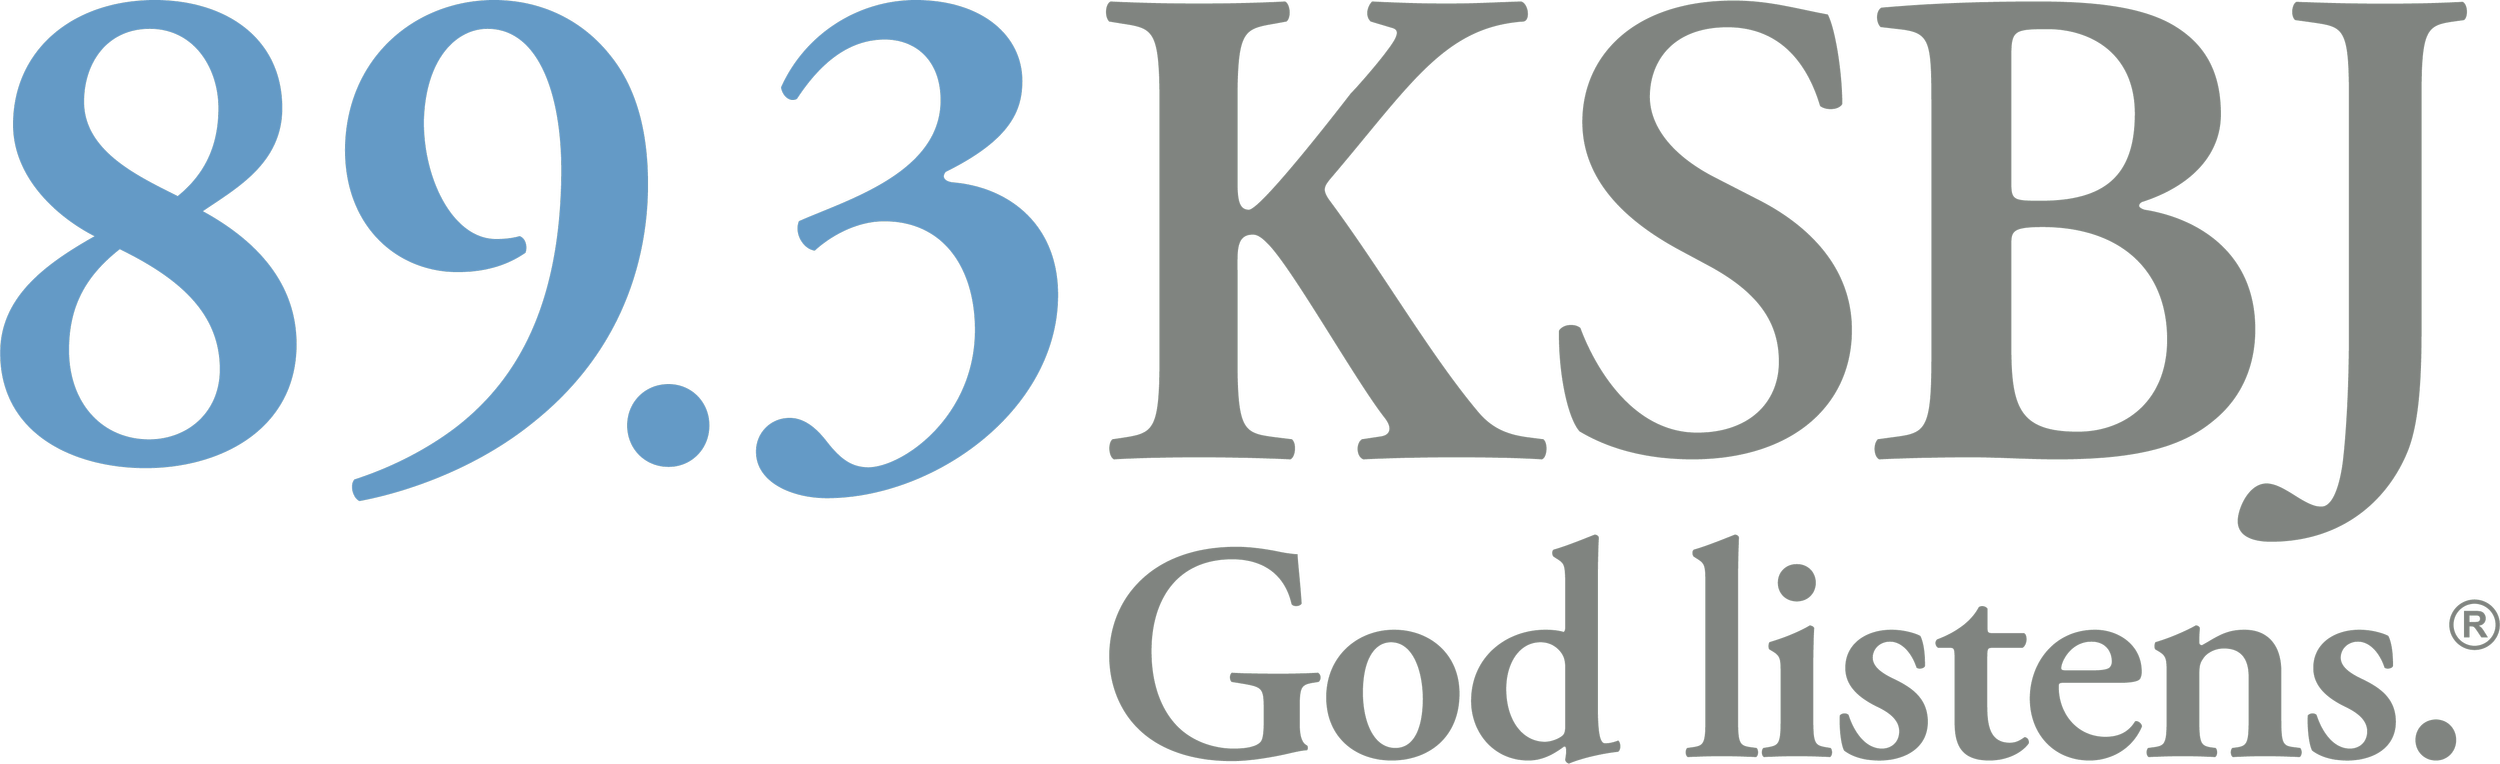 KSBJ_Logo_Tagline_Color.png